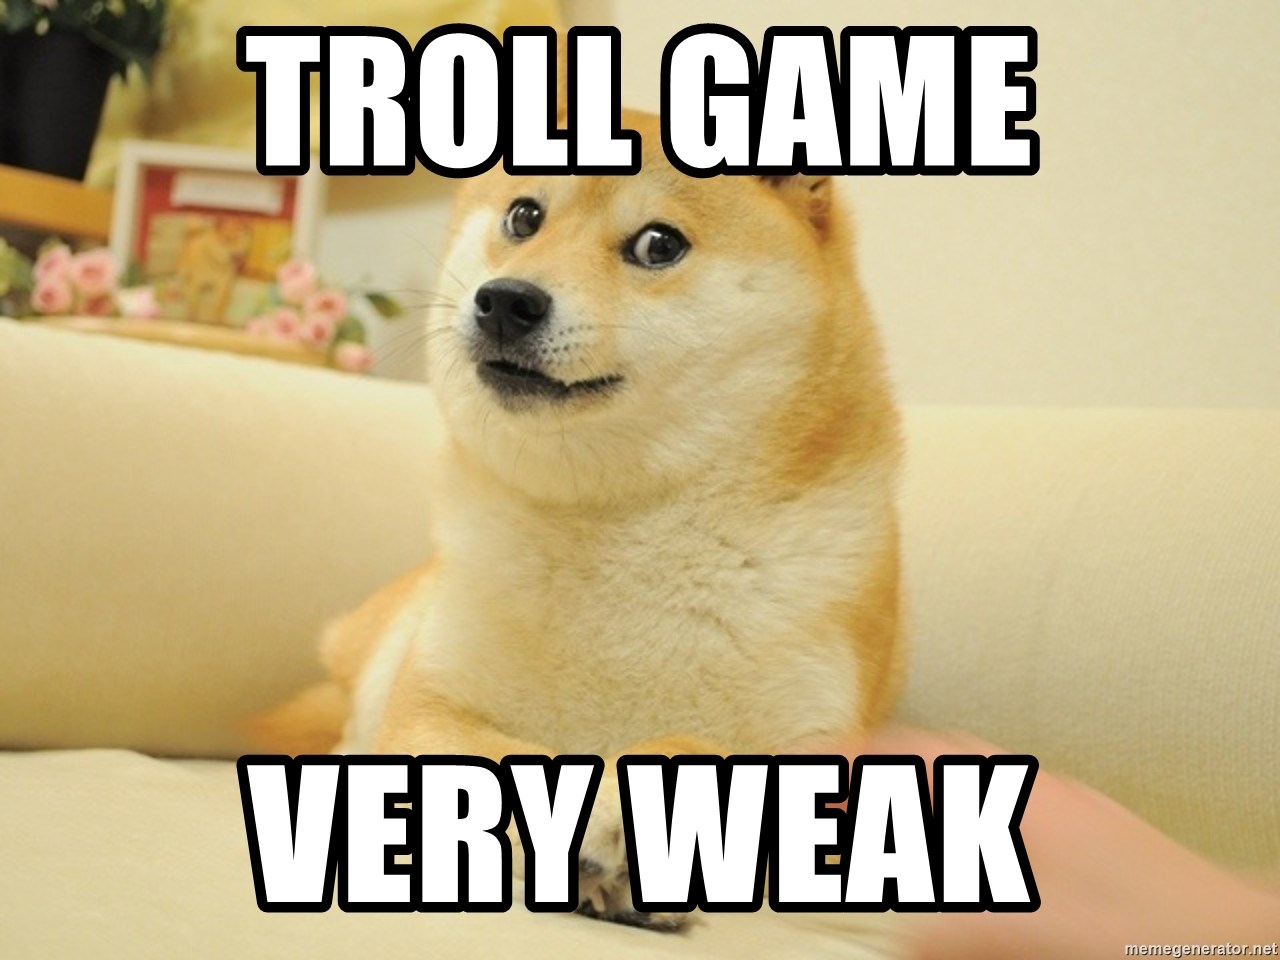 troll-game-very-weak.jpg